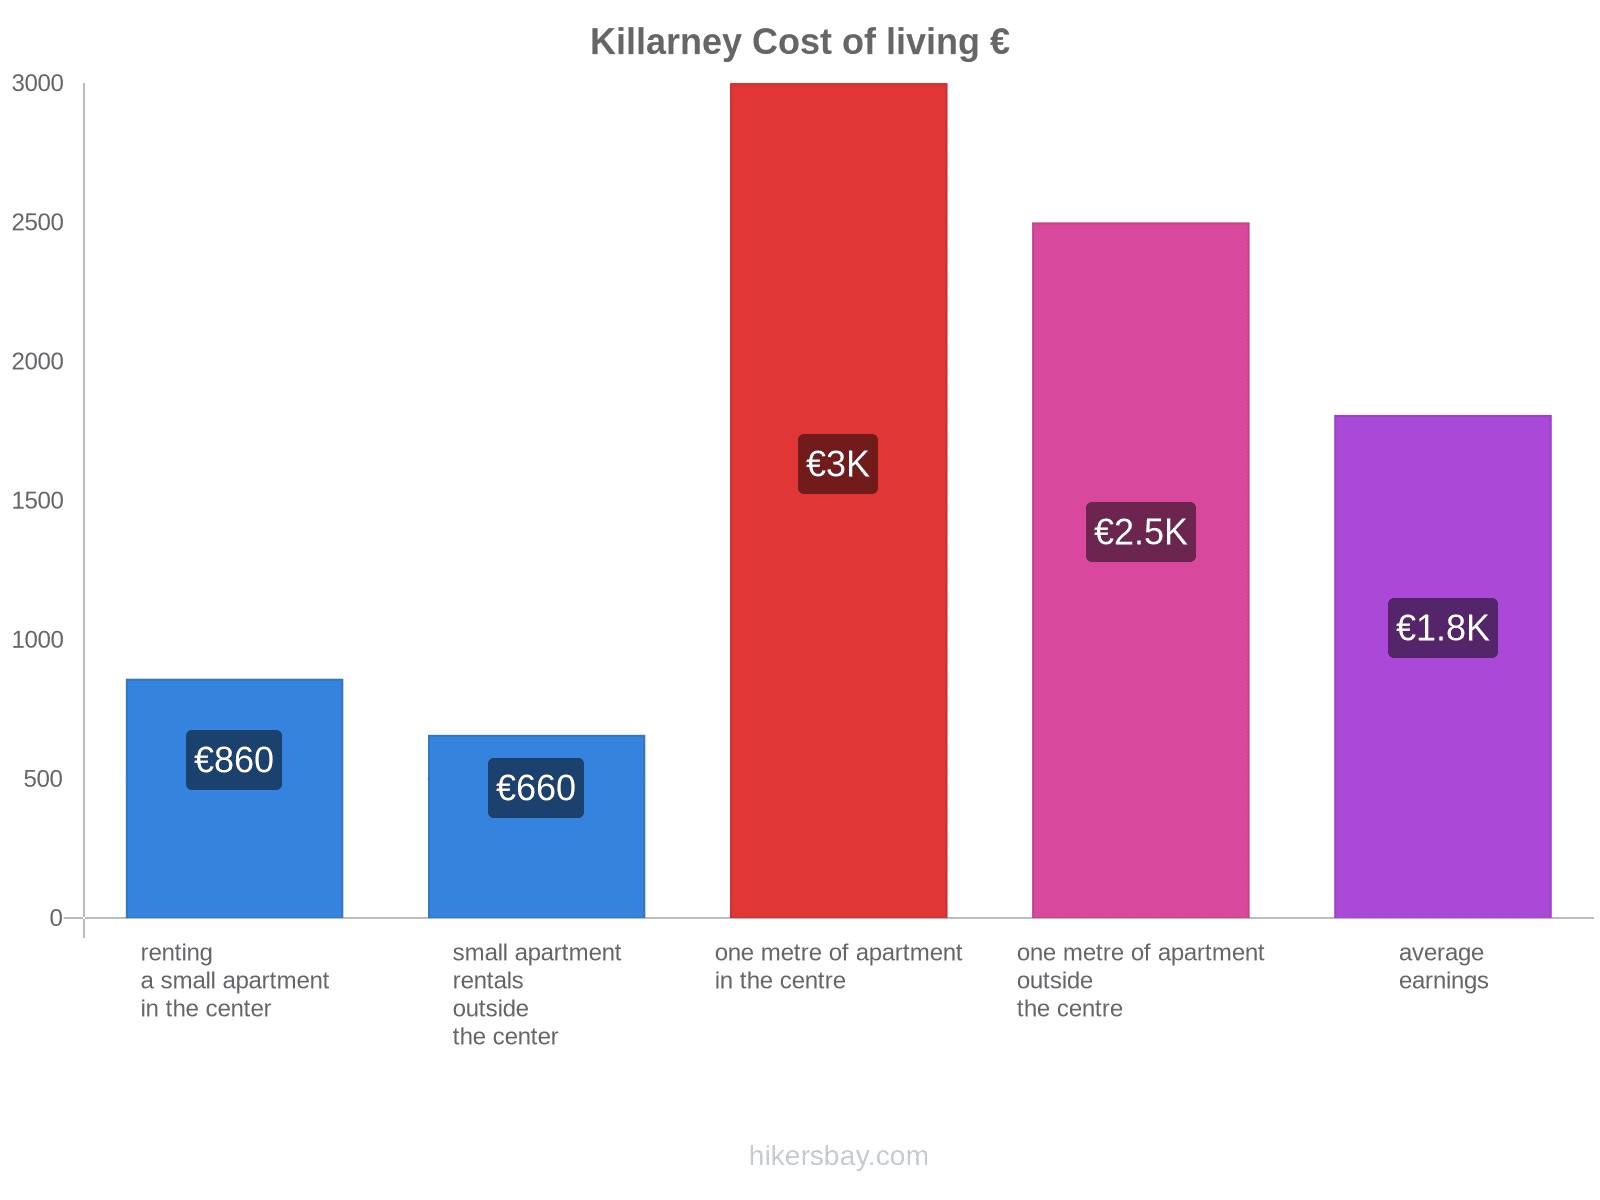 Killarney cost of living hikersbay.com